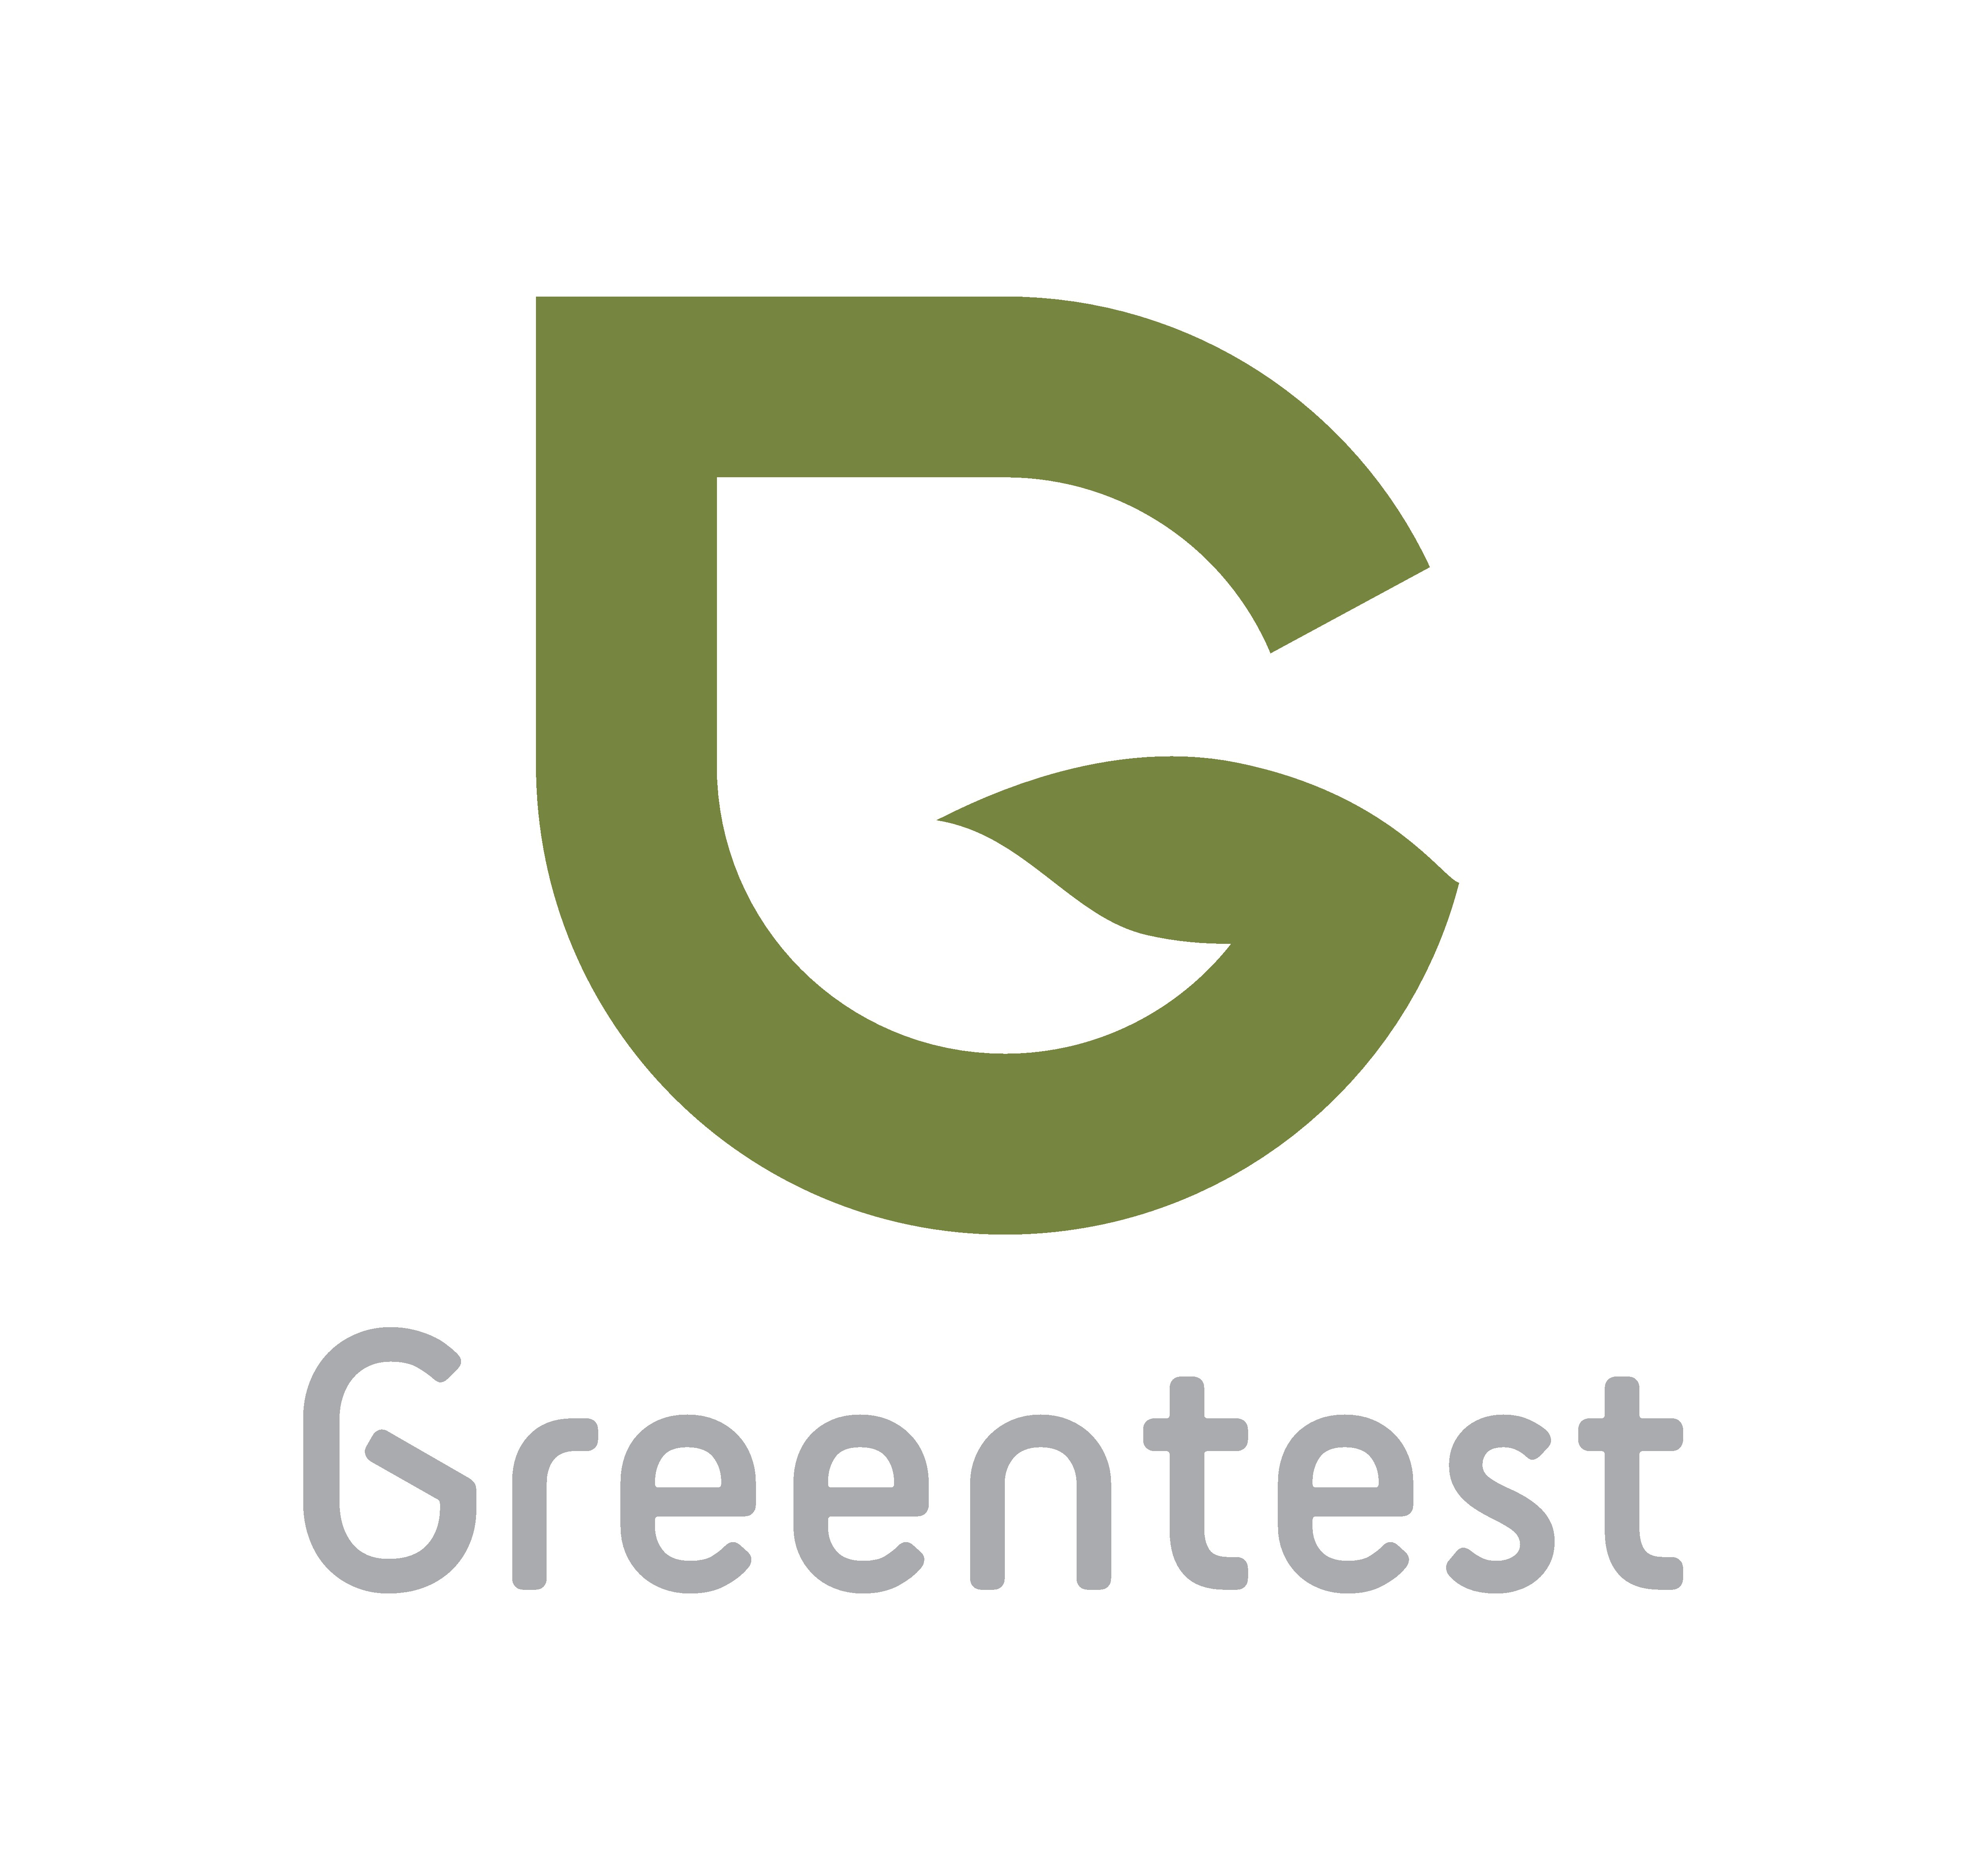 Greentest Eco Návod k použití Obsah: 1. Co je to Greentest Eco? 1.1 Co Greentest Eco detekuje? Jak mohou dusičnany mohou ovlivnit mé zdraví? 1.2 Jaké látky Greentest Eco měří a jak jej mám používat?